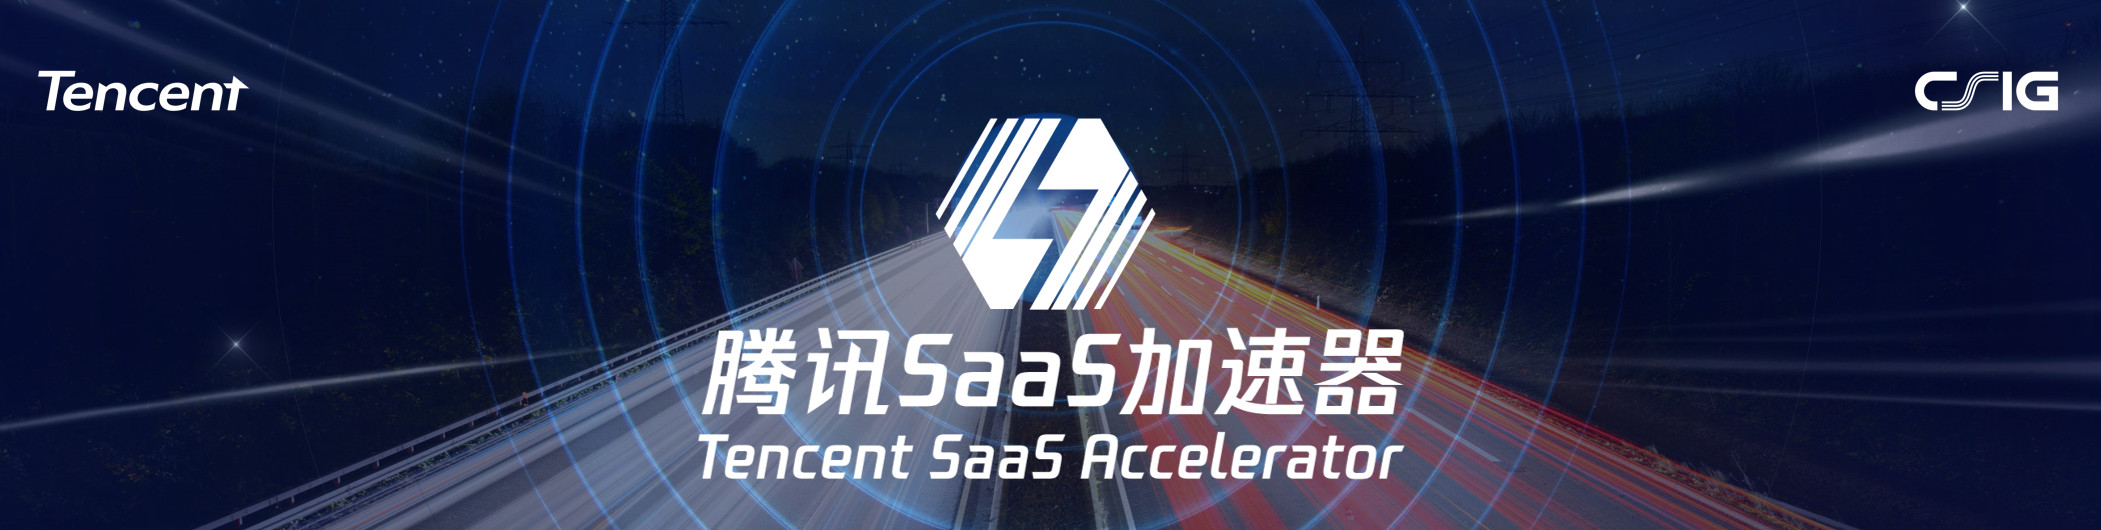 31会议入选腾讯SaaS加速器二期最优秀40家SaaS企业